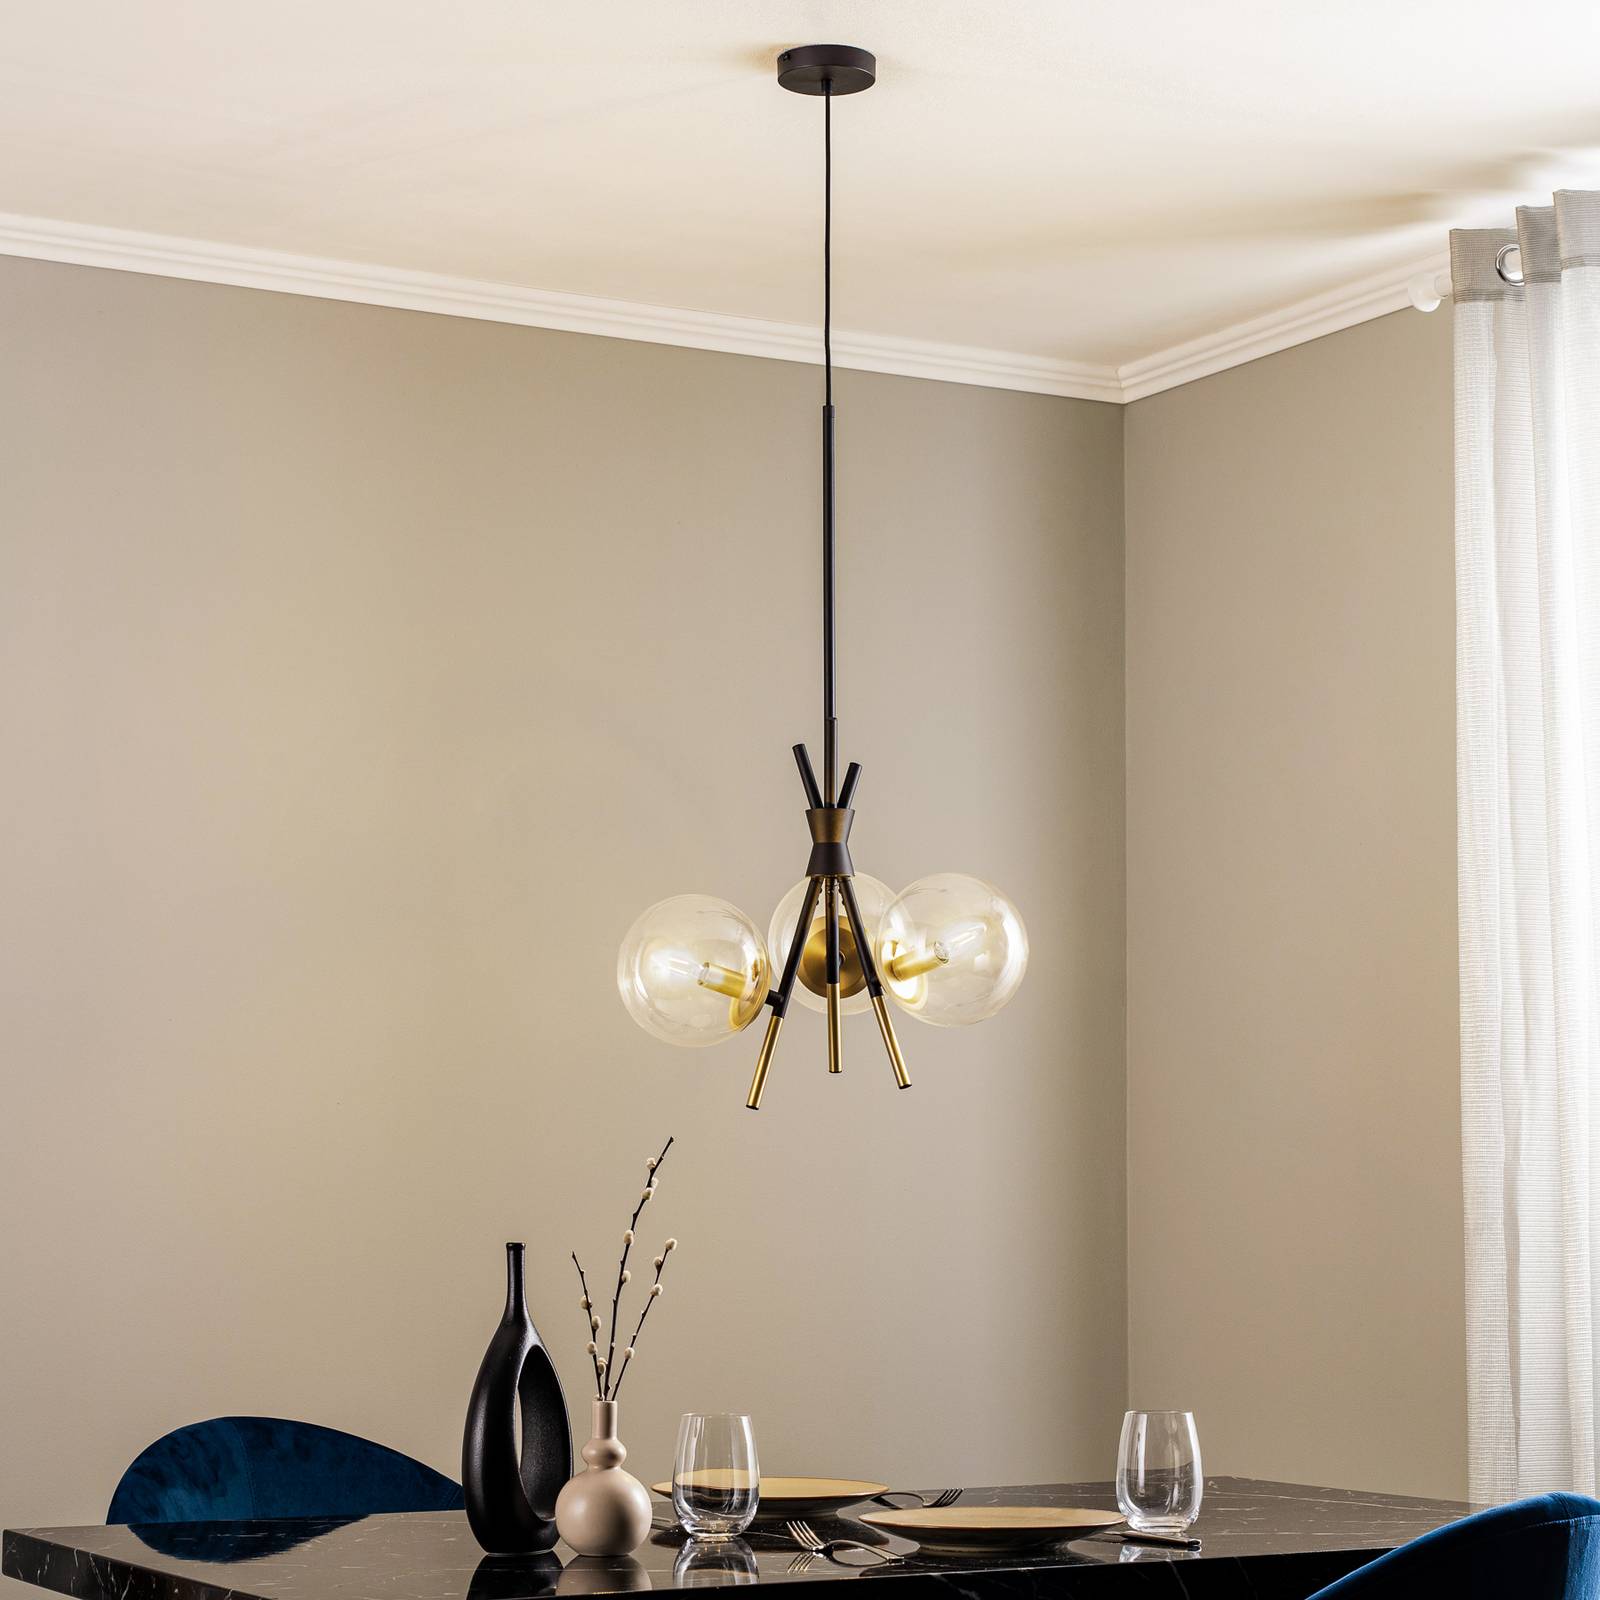 Lucande Lucande Sotiana závěsná lampa, 3 světla, kulatá, mosaz